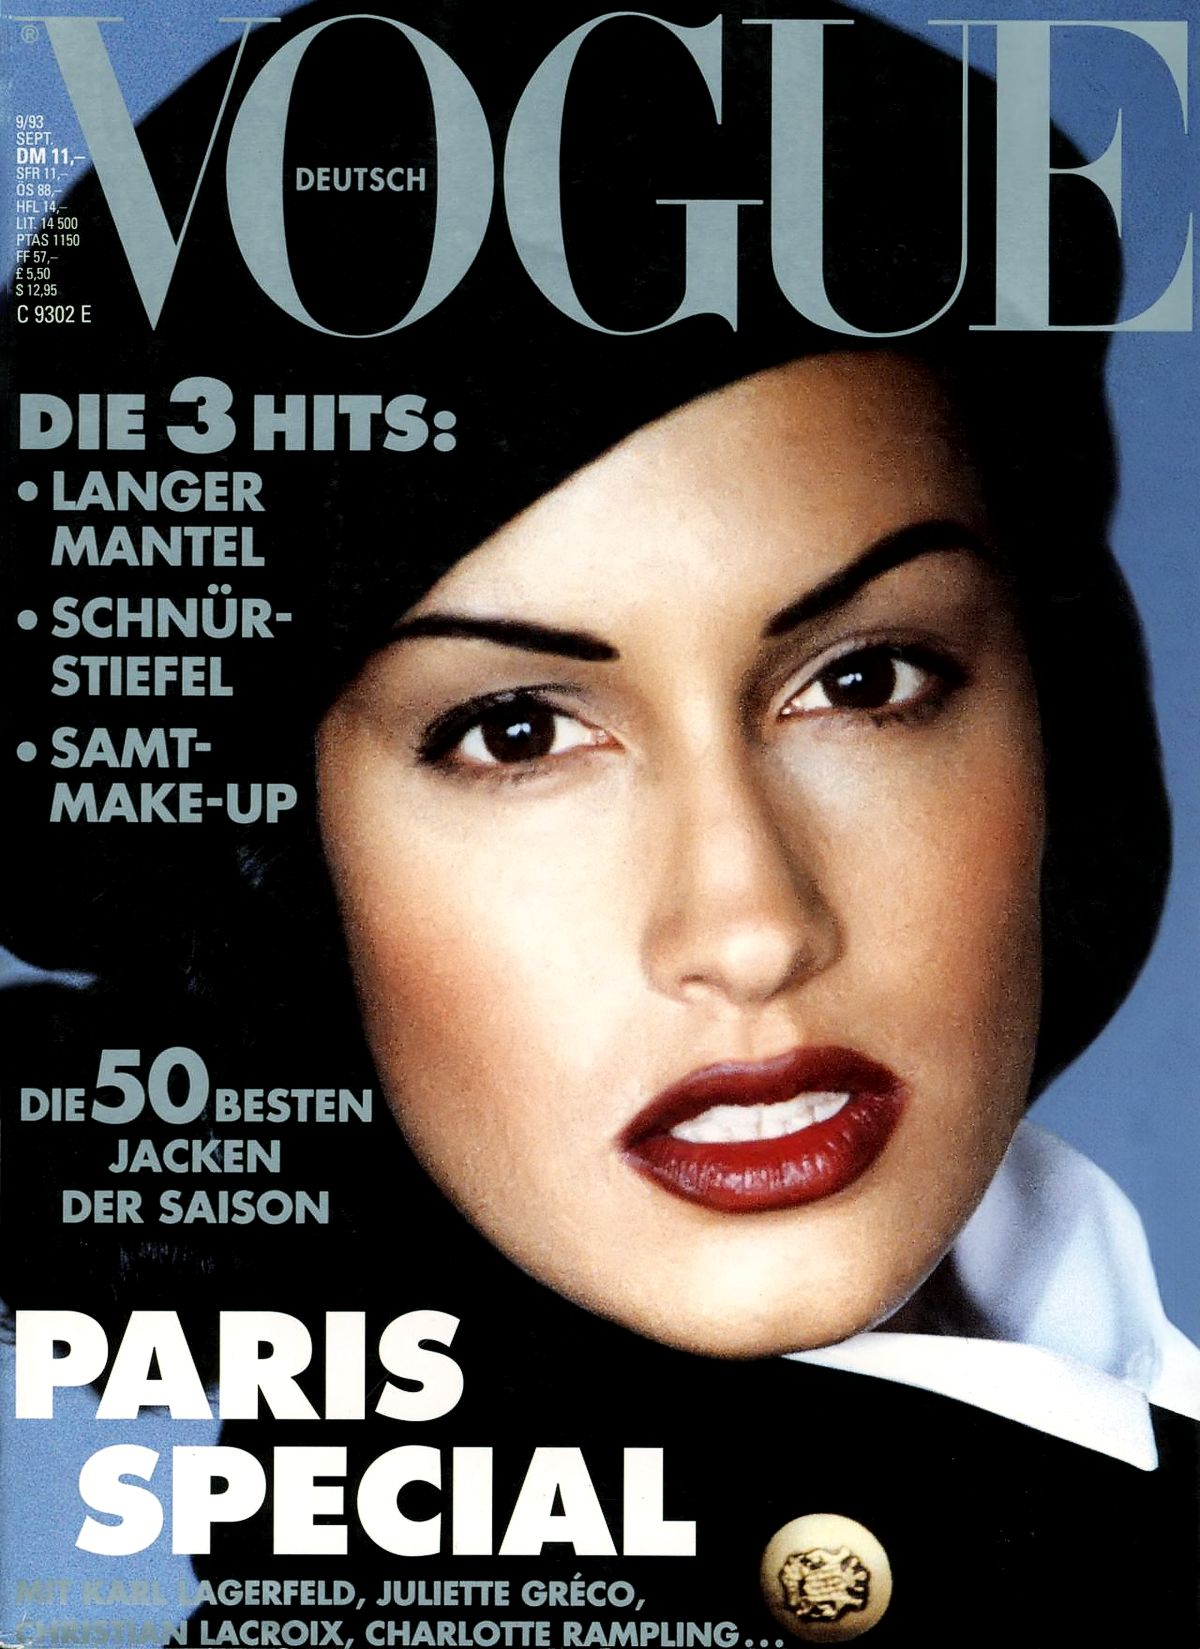 Ясмин Гаури на обложке журнала Vogue Deutsch